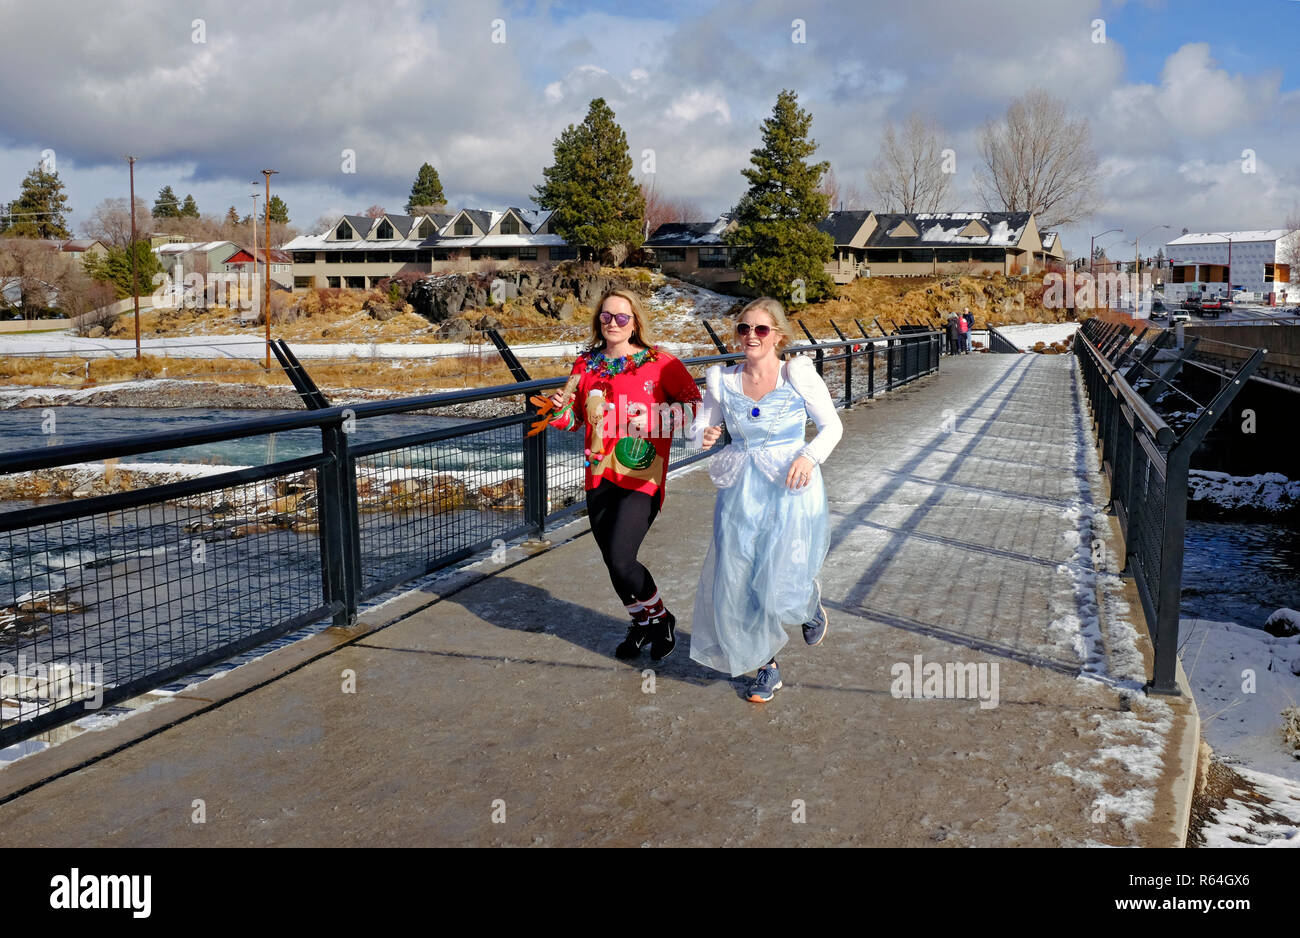 Los corredores y caminantes en traje tomar parte en un evento anual de caridad que apoya a la Fundación de Artritis llamada el Jingle Bell ejecutar, celebrada en Bend, oh Foto de stock